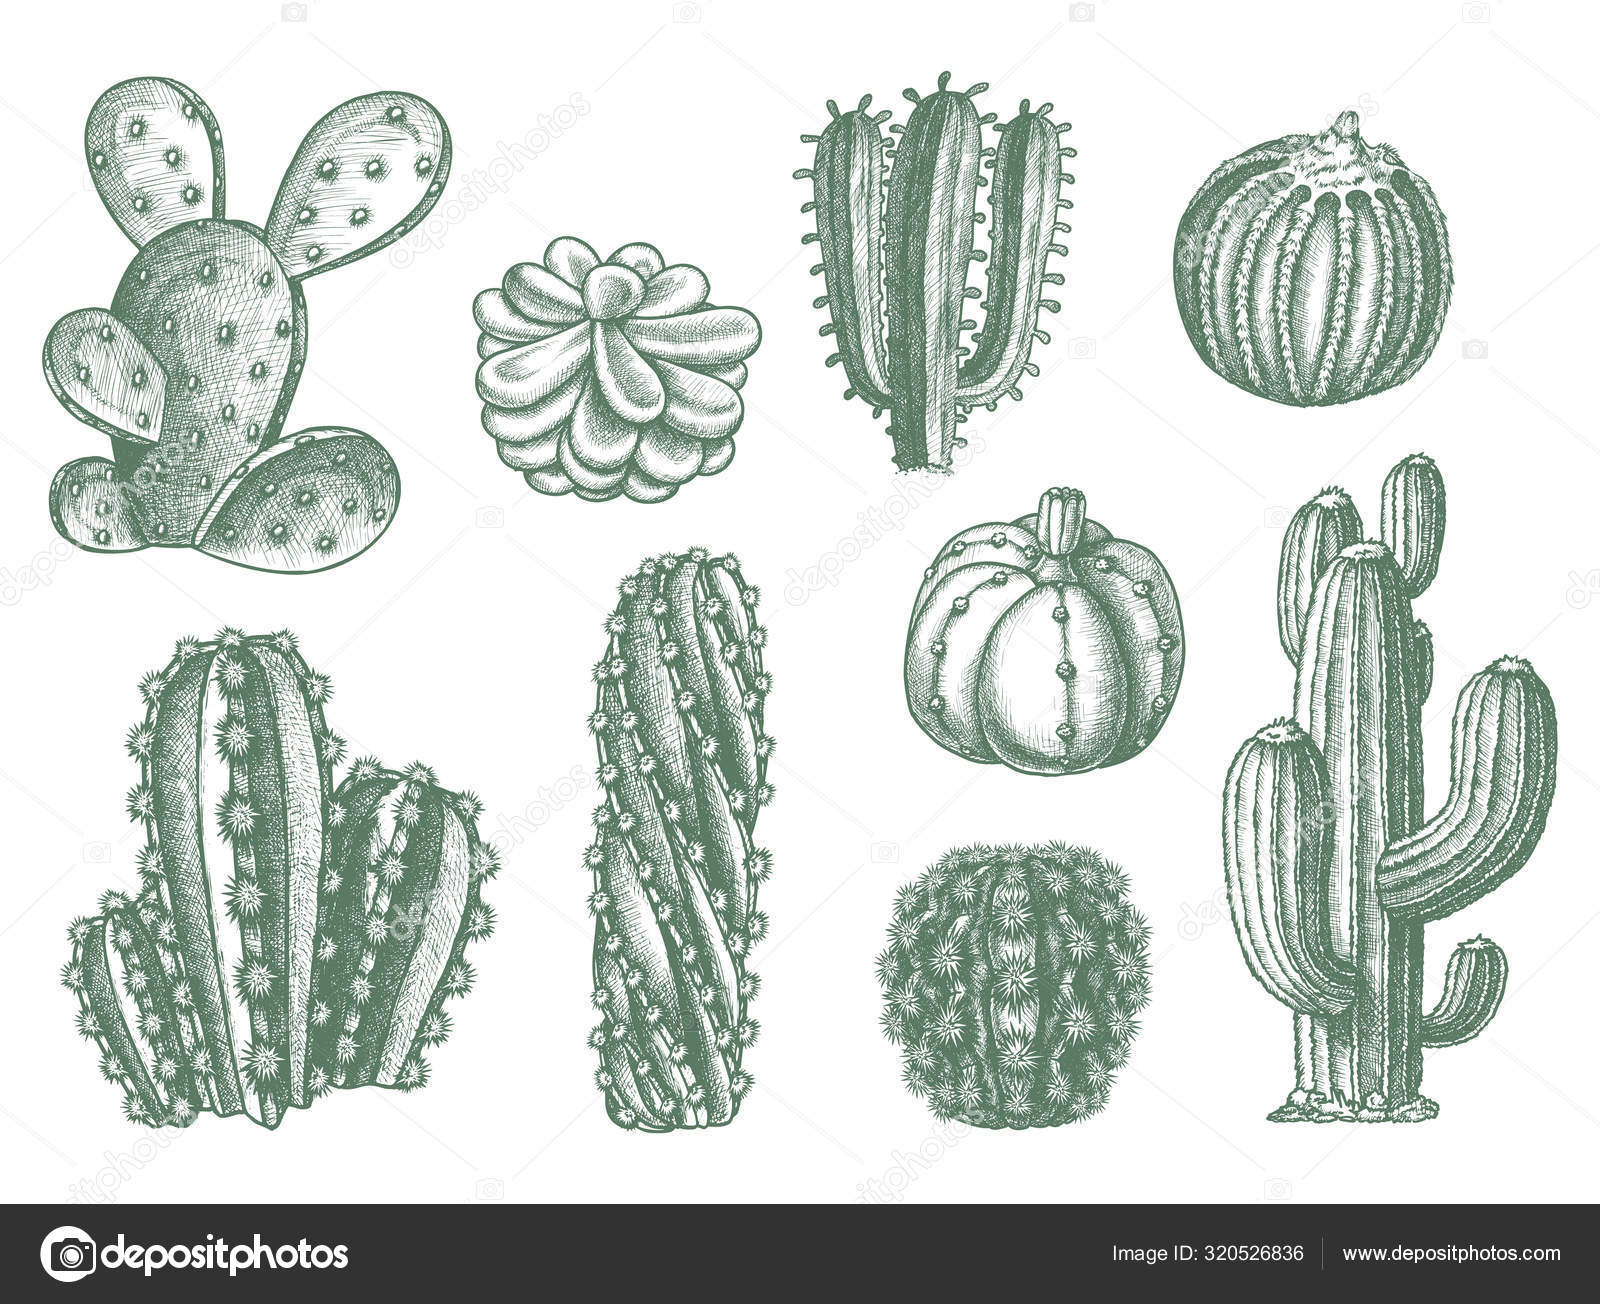 Ilustração de cactos e suculentas, planta suculenta Cactaceae